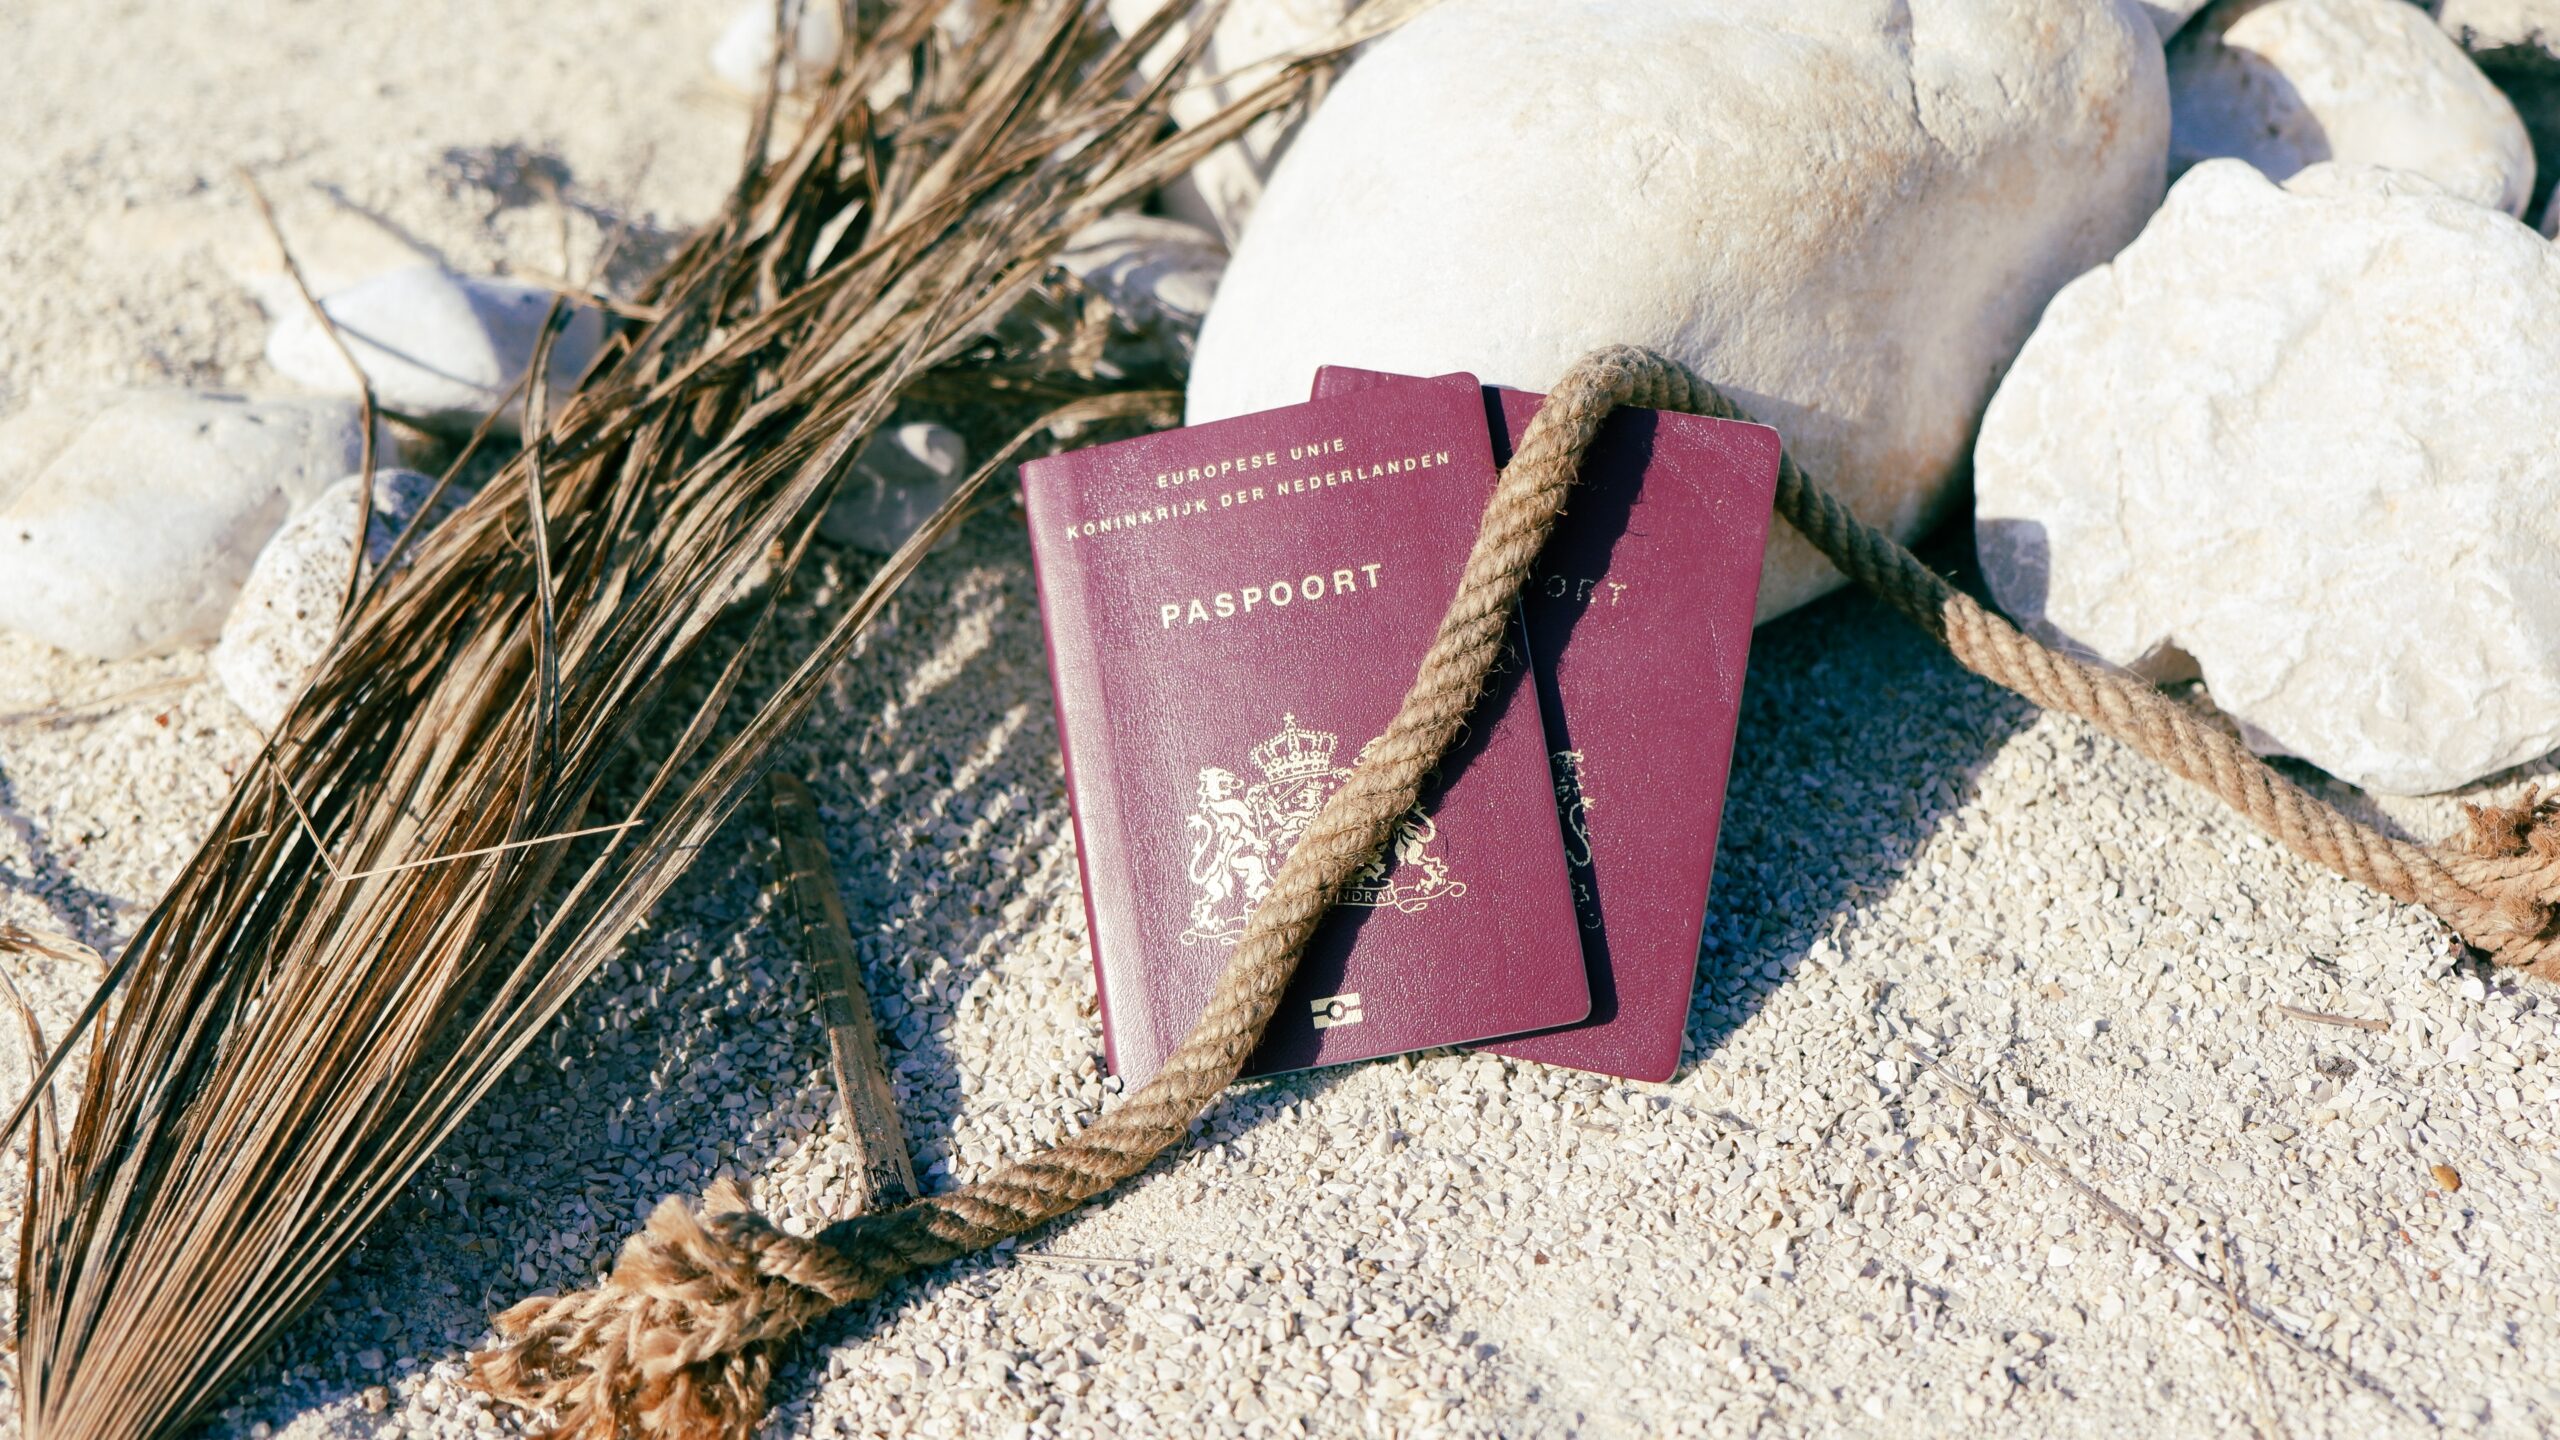 Passports left on the beach